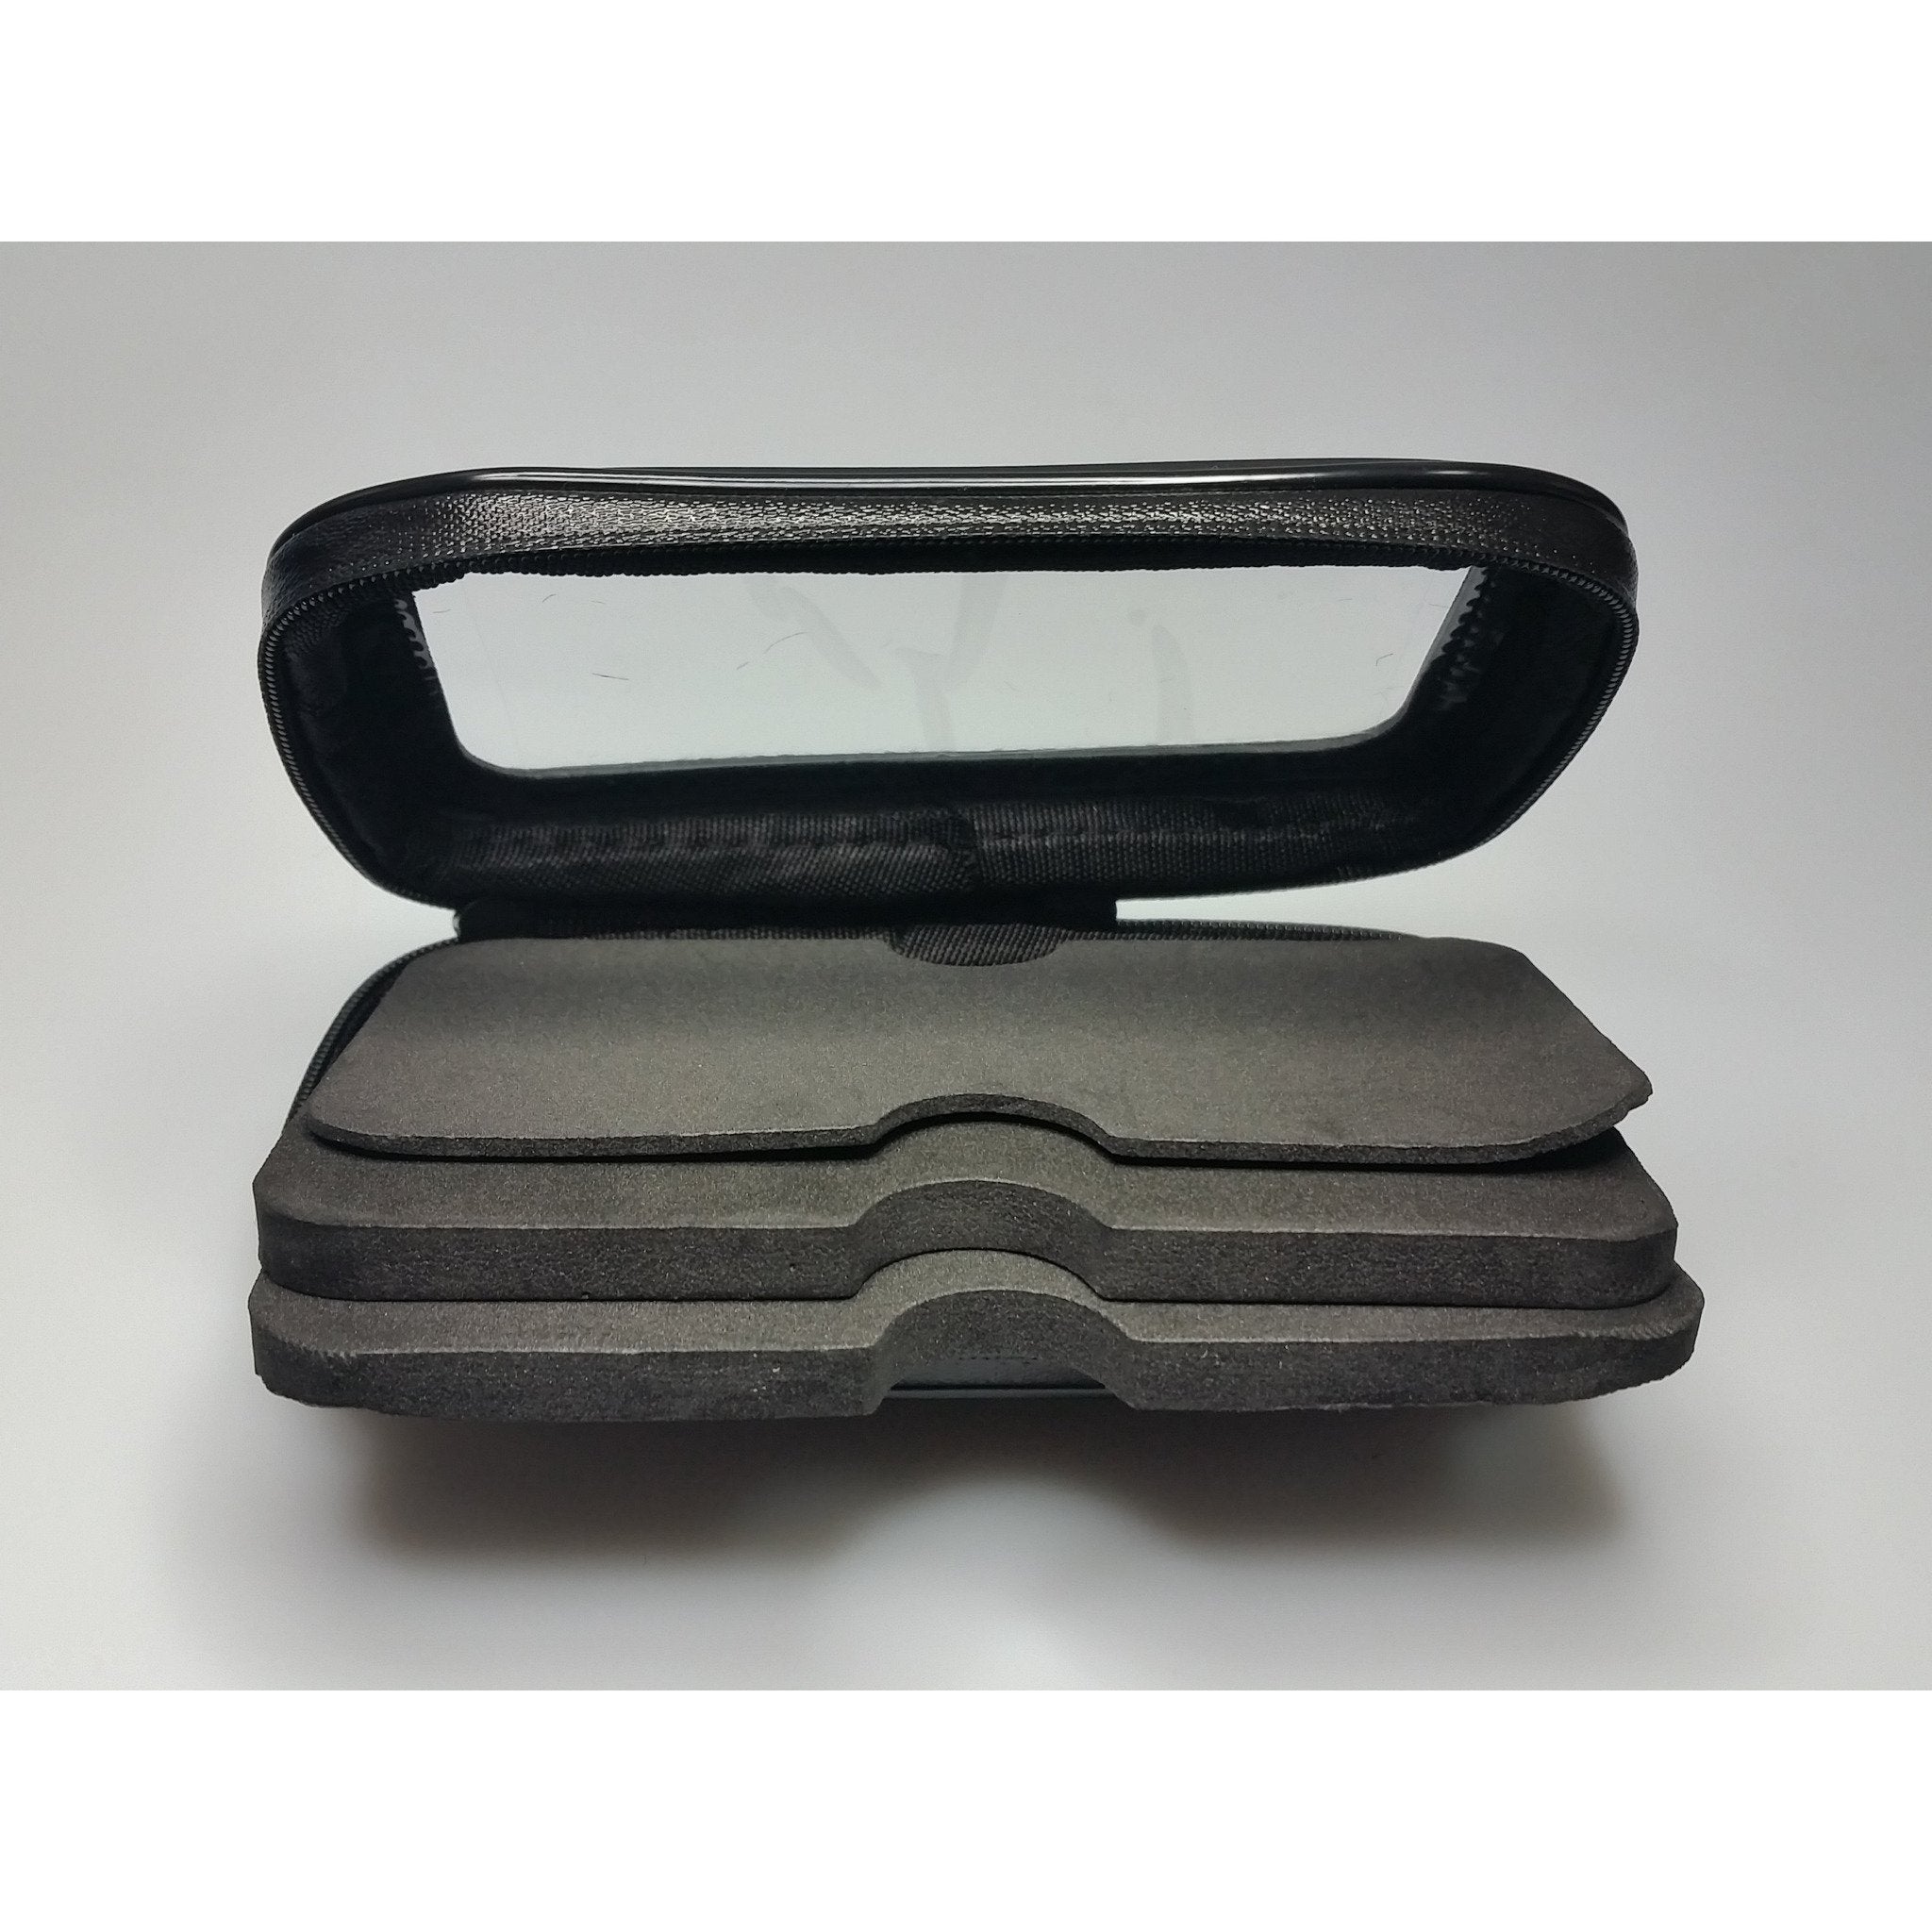 RIDEZ waterproof smartphone case